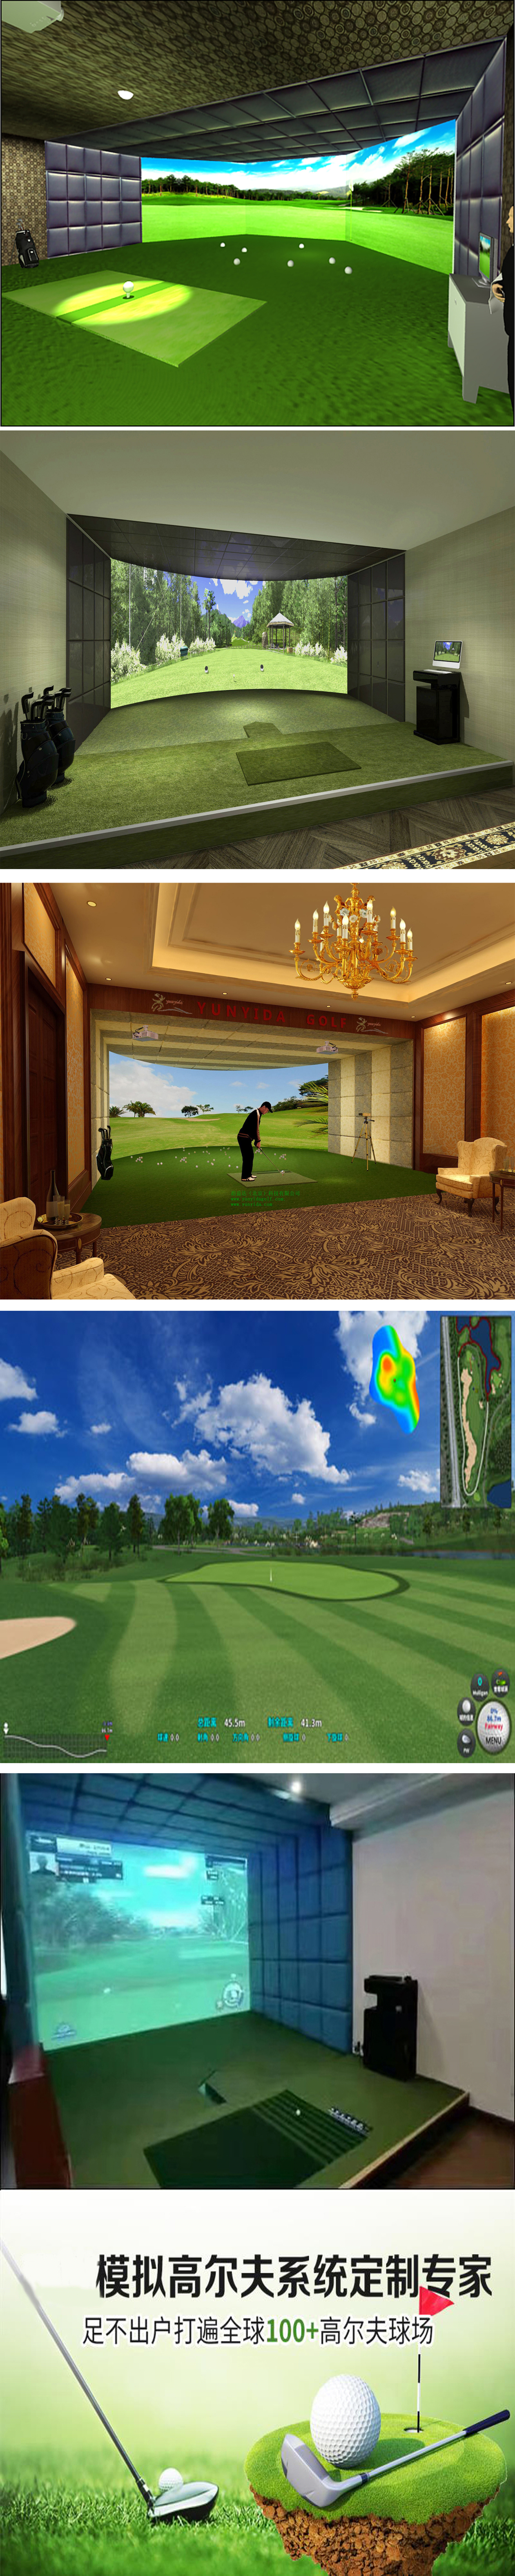 高尔夫模拟器系统  1.jpg